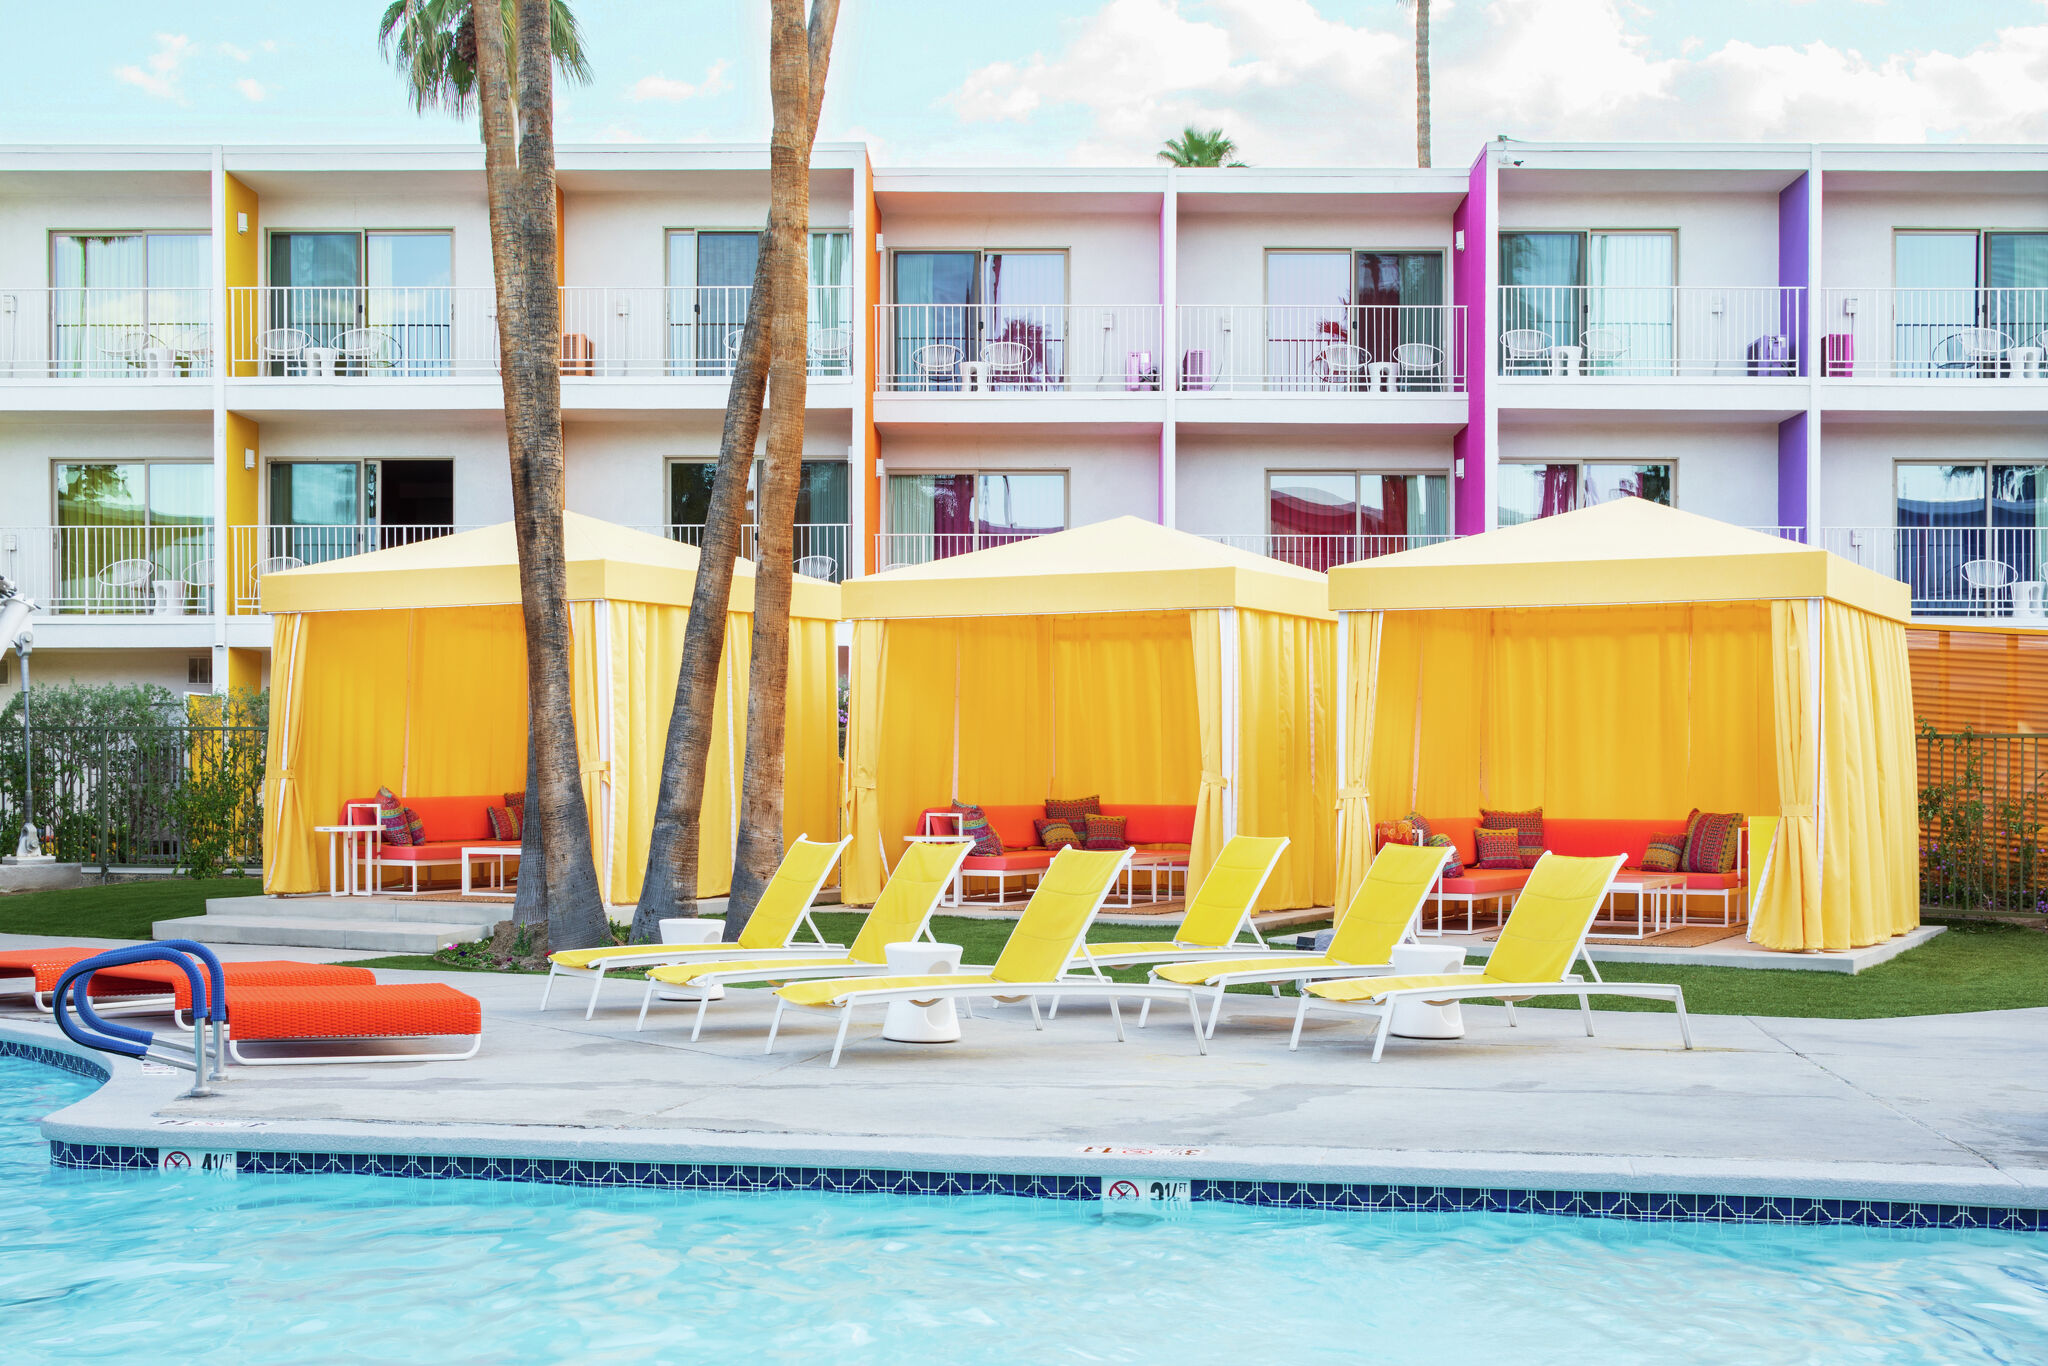 Palm Springs Bachelorette Party Weekend Getaway ⋆ Ruffled